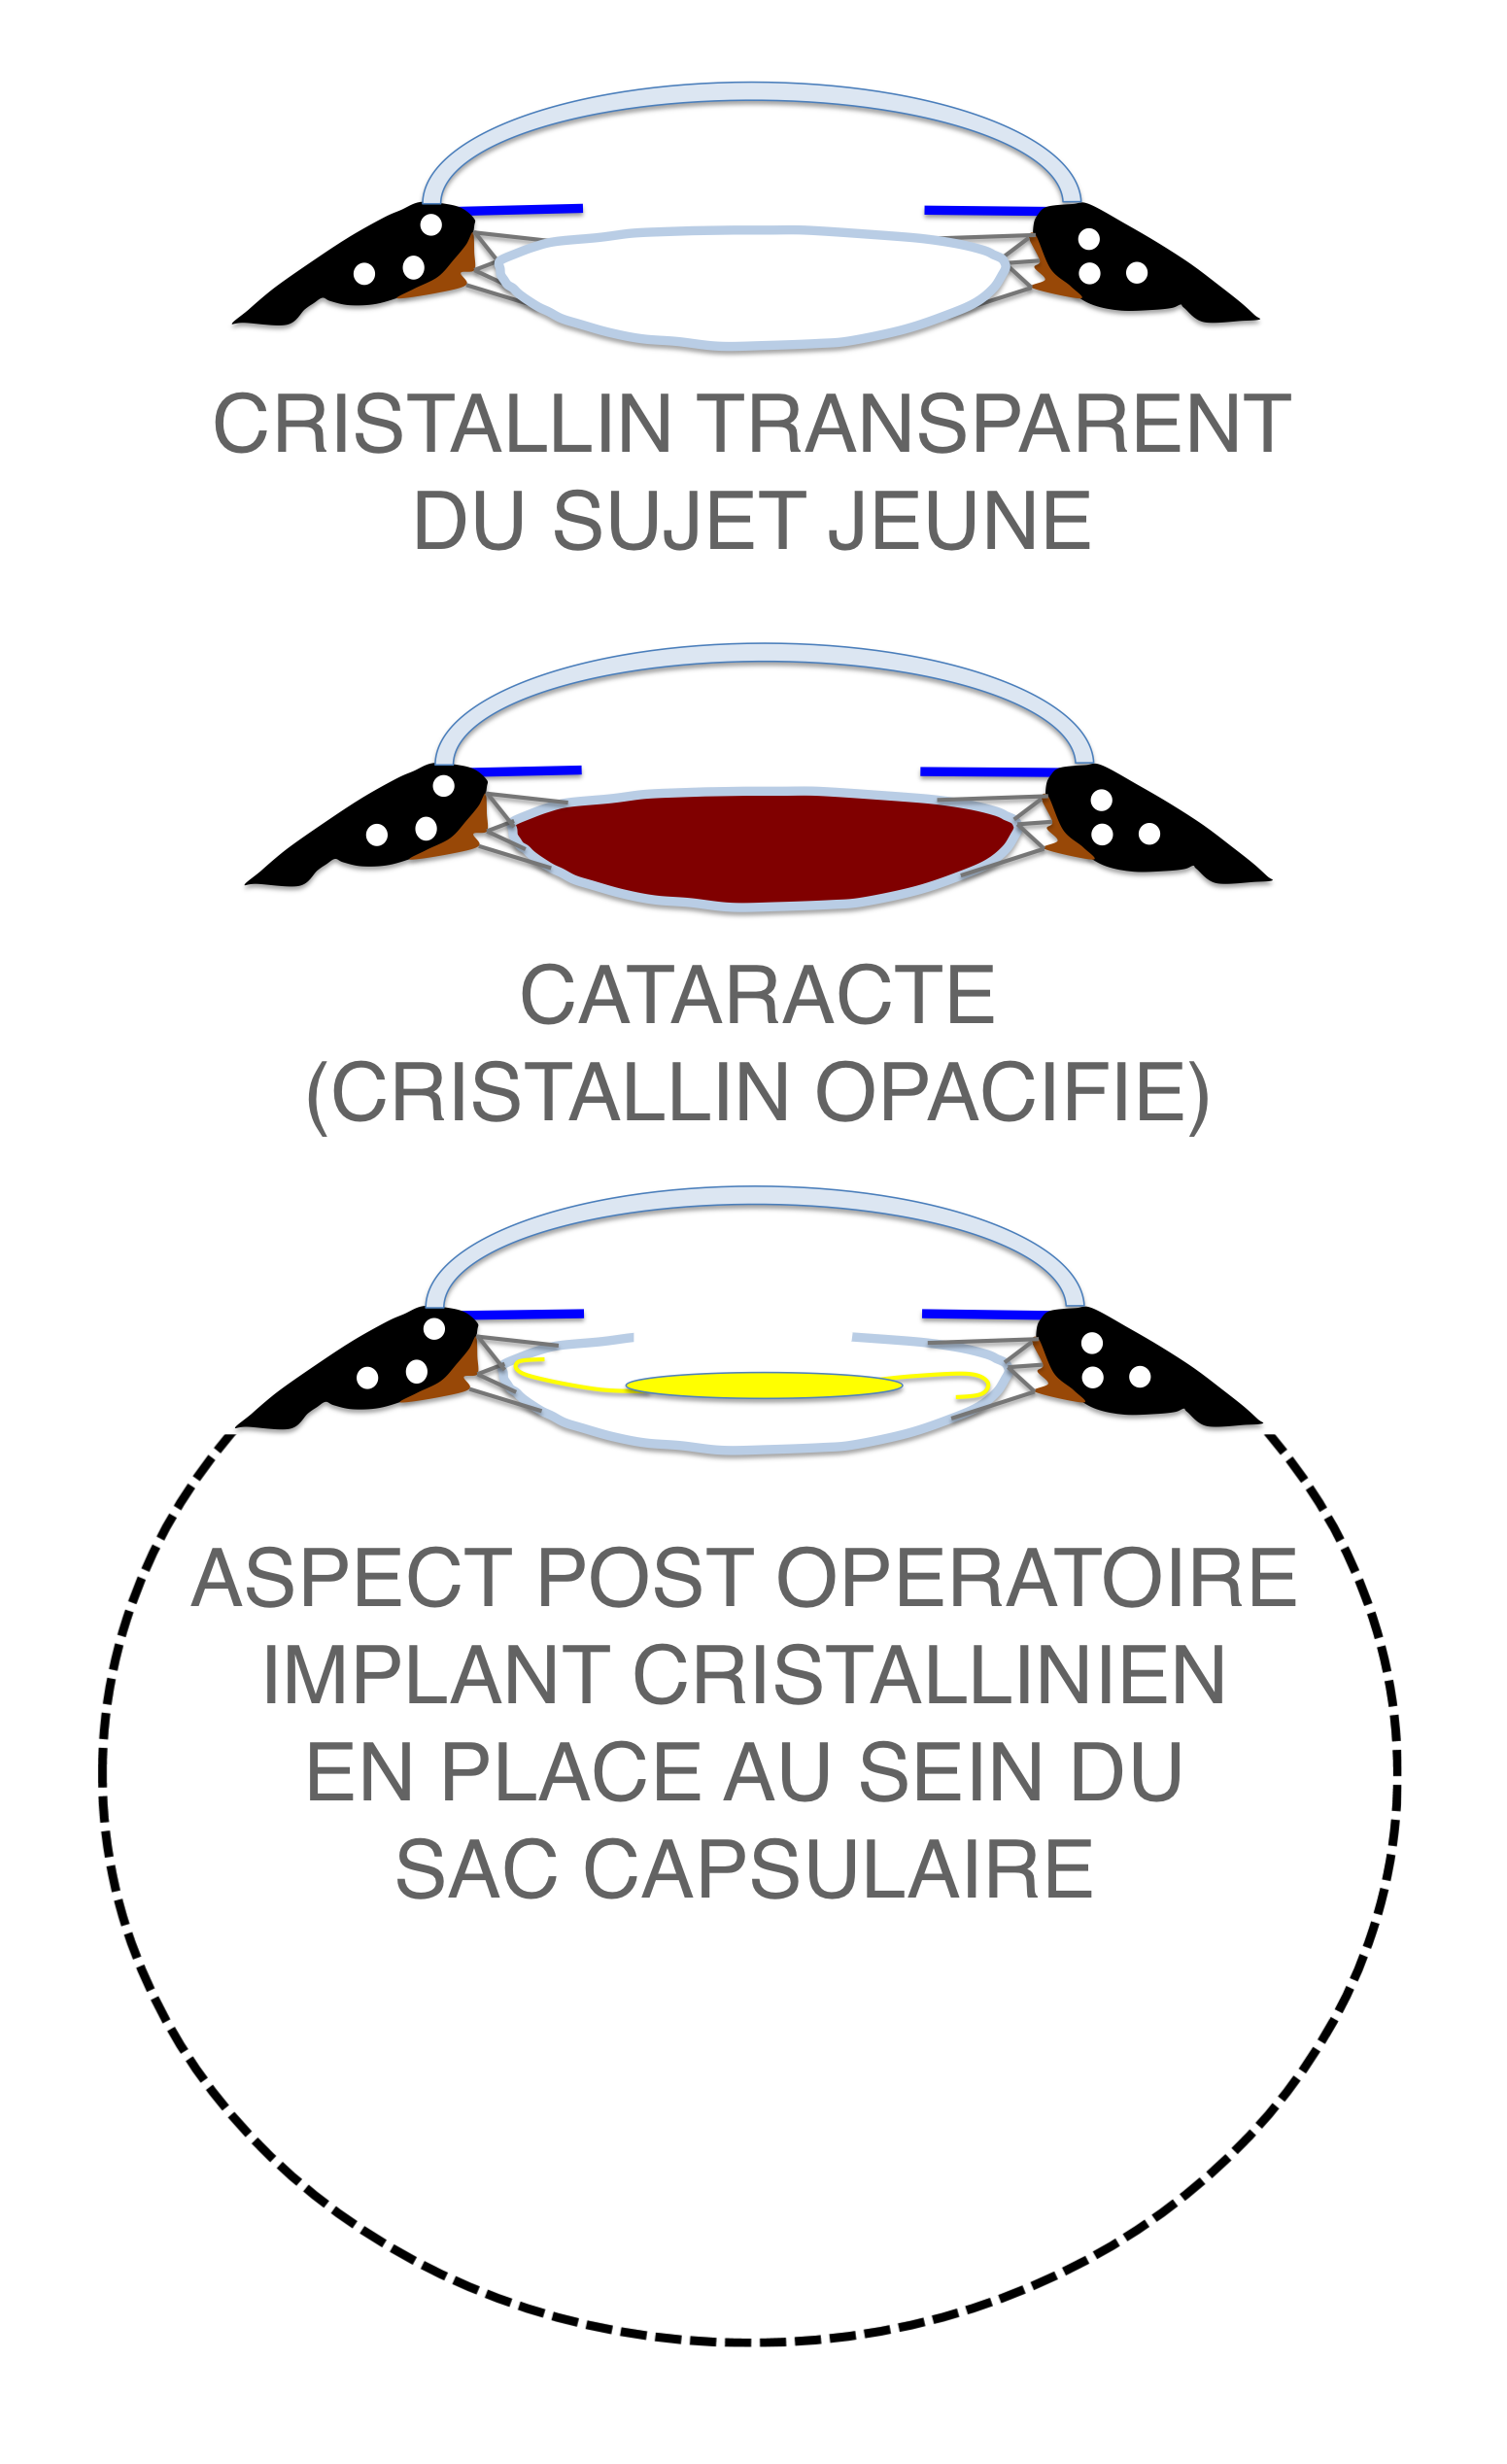 le cristallin atteint par la cataracte (en haut) est remplacé par un implant (en bas)